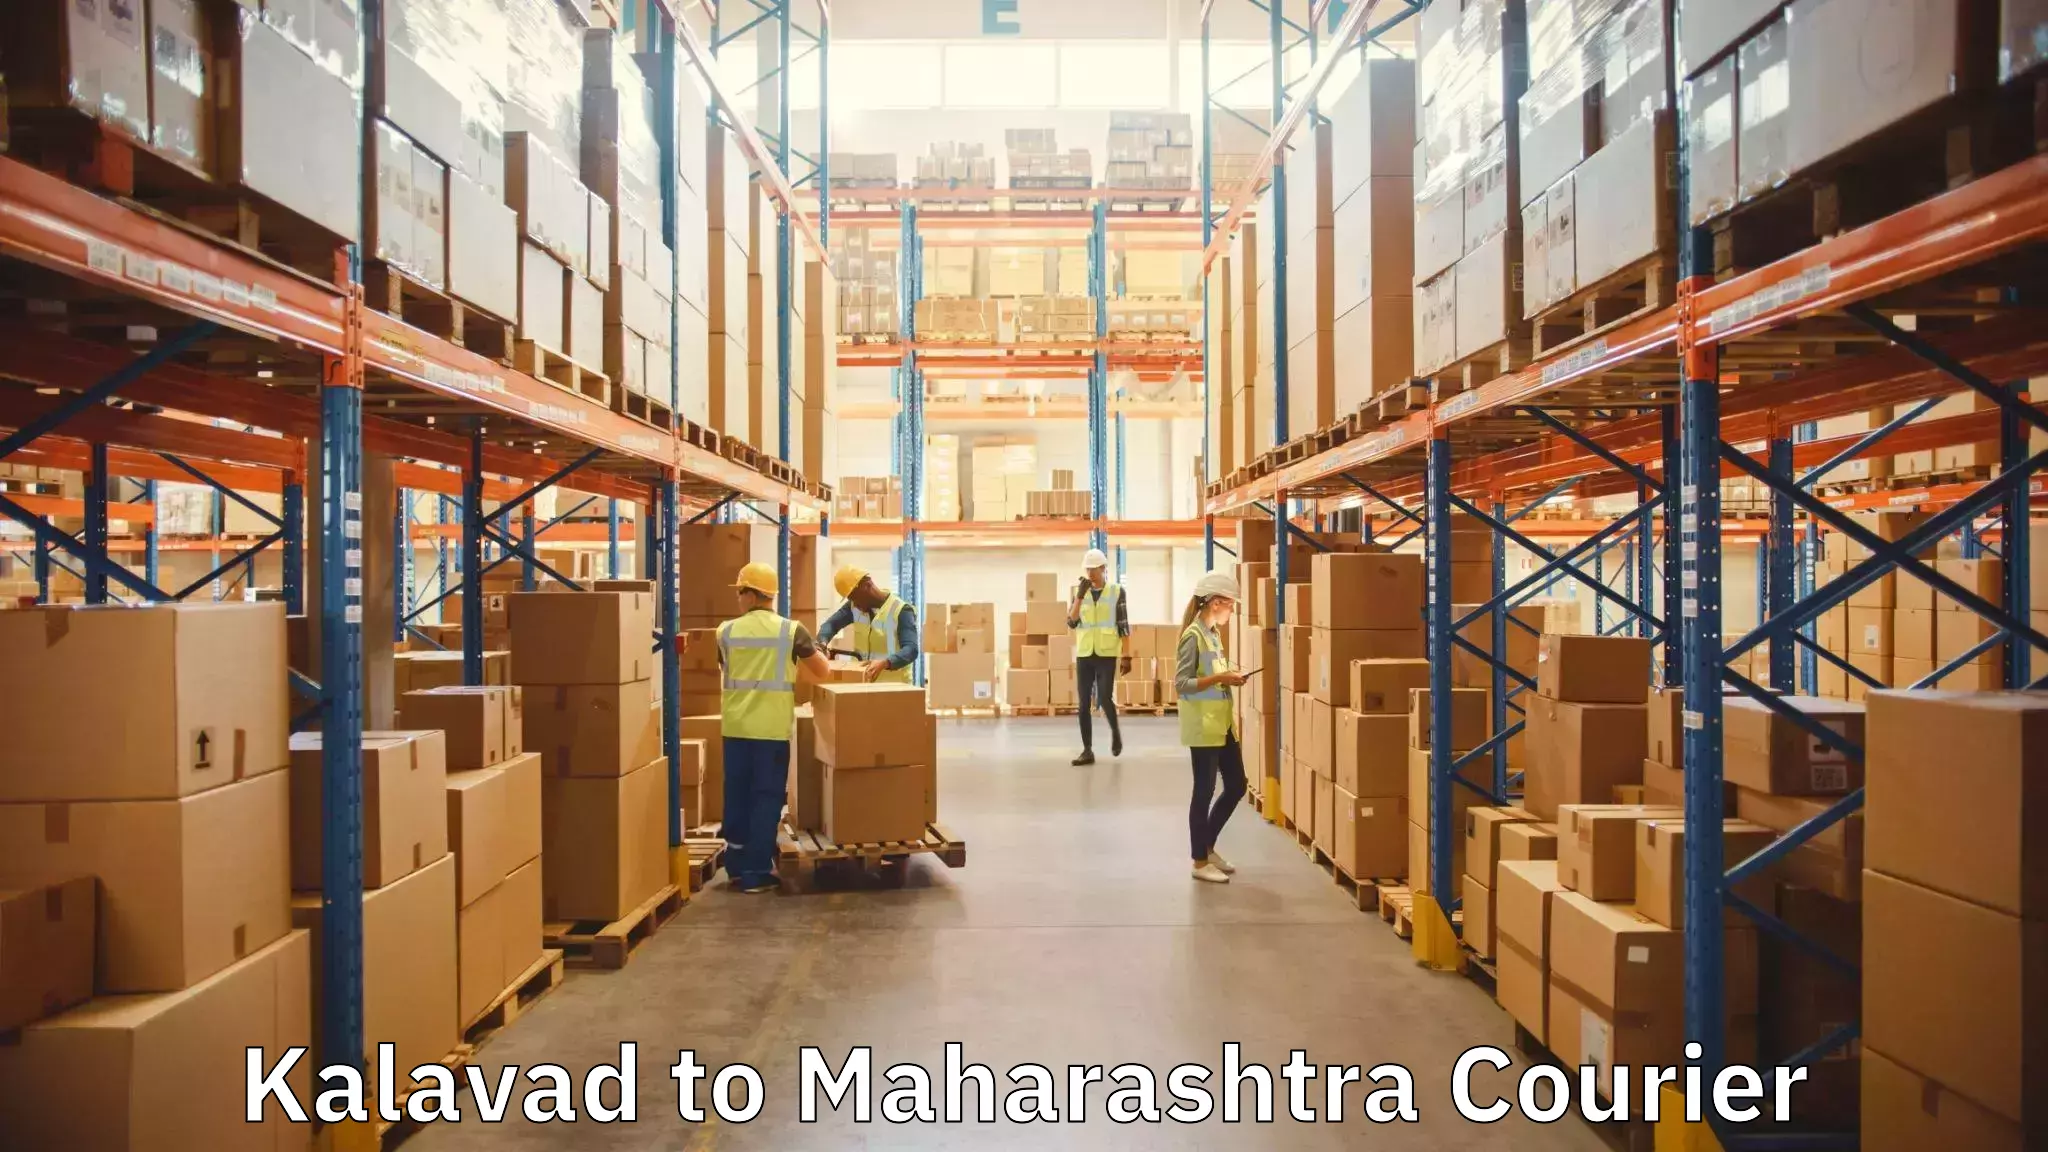 Furniture transport experts Kalavad to Kandhar